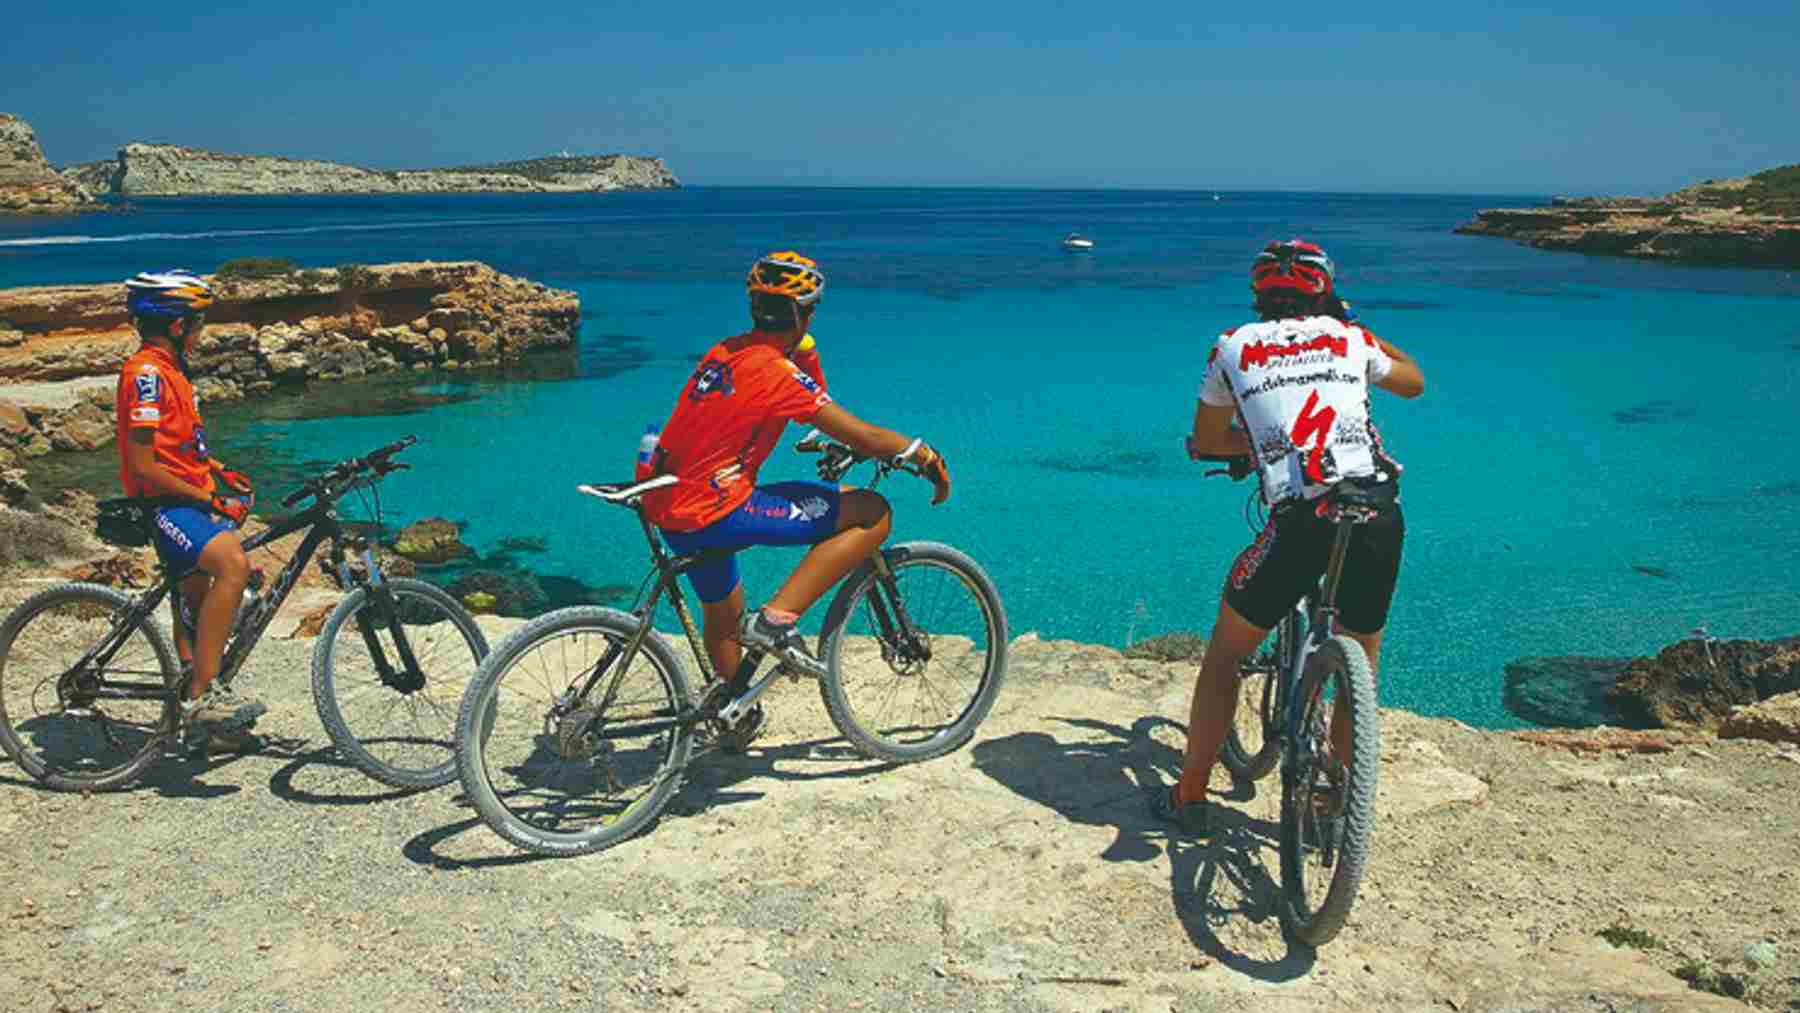 El deporte será el gran protagonista en la isla gracias al Multisport World Championships Ibiza 2023.